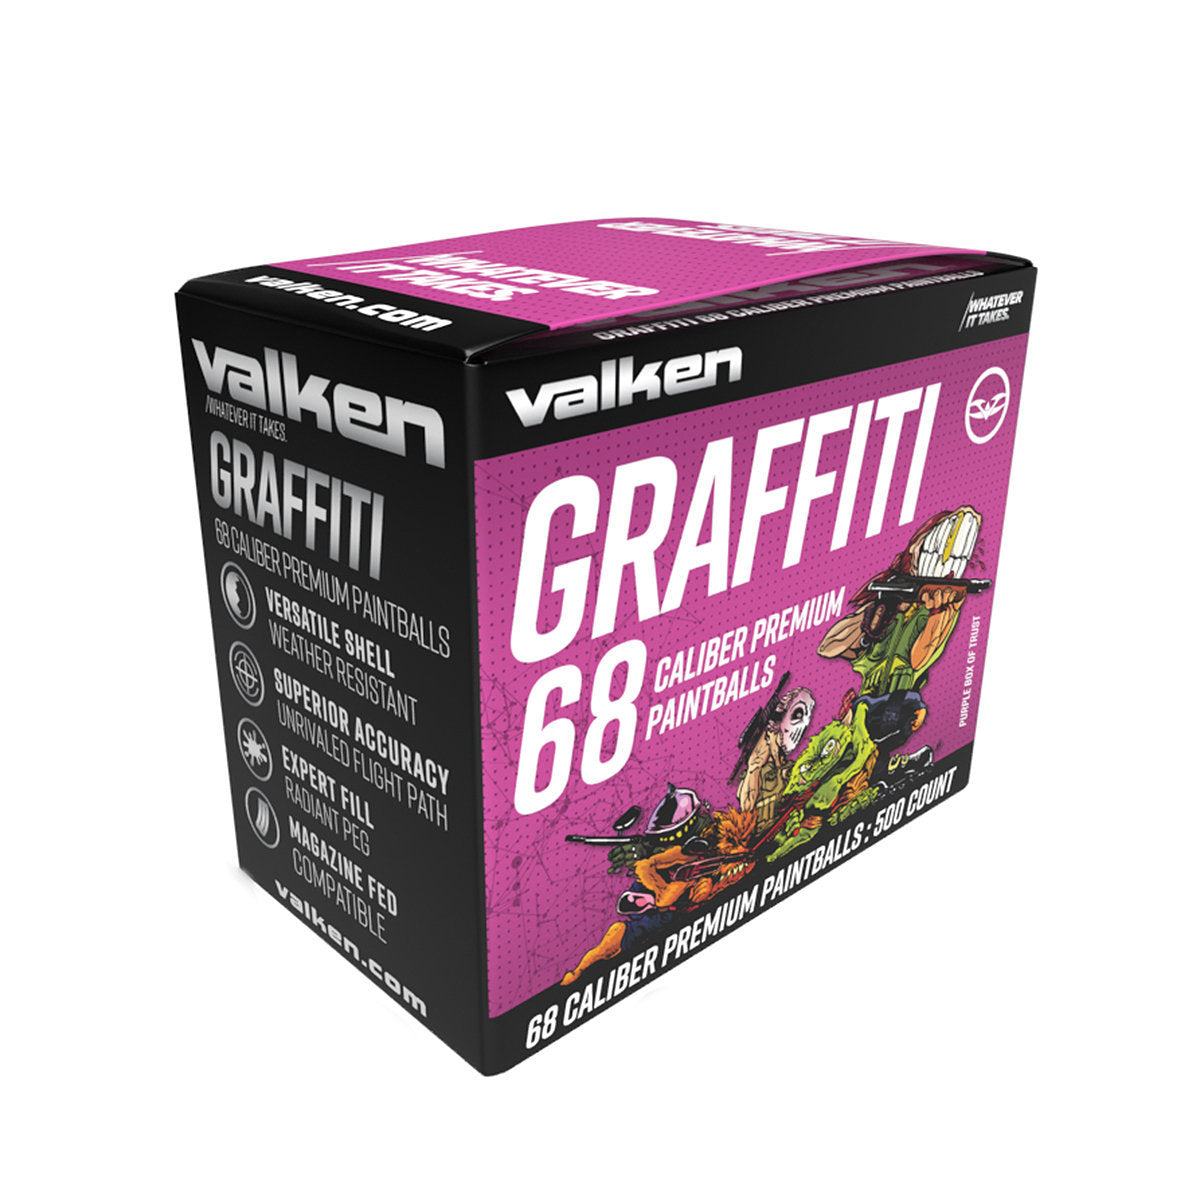 Valken Graffiti .68 Caliber Paintballs - 500 Count